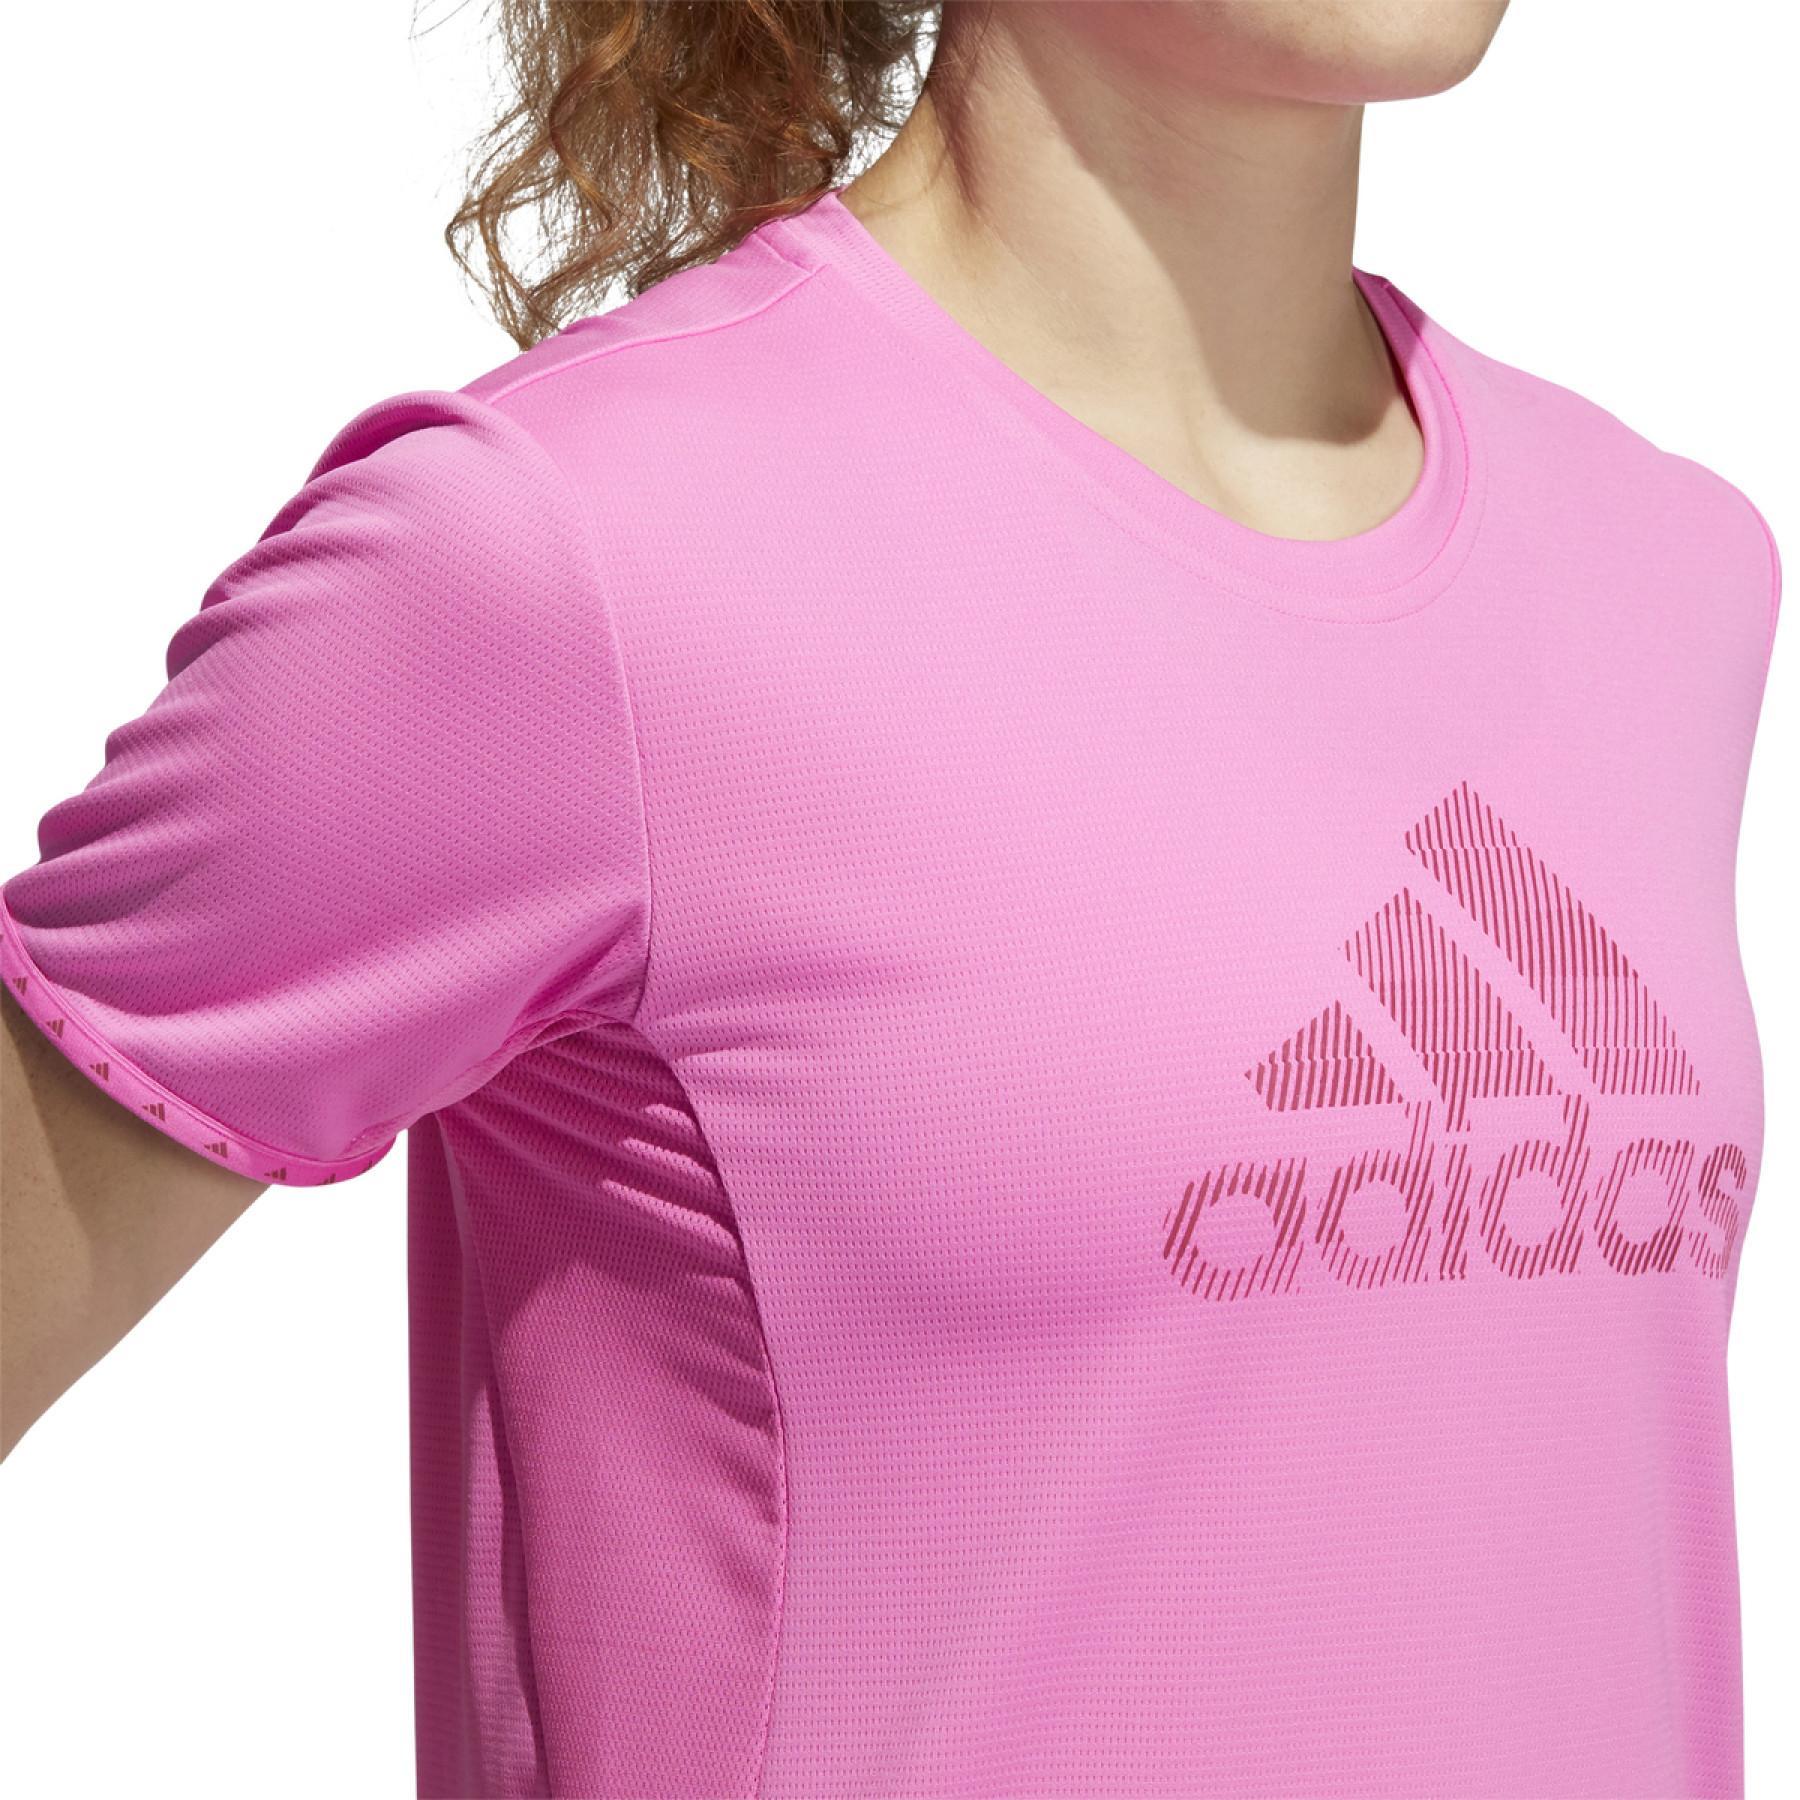 Camiseta de mujer adidas Badge of Sport Necessi-Tee